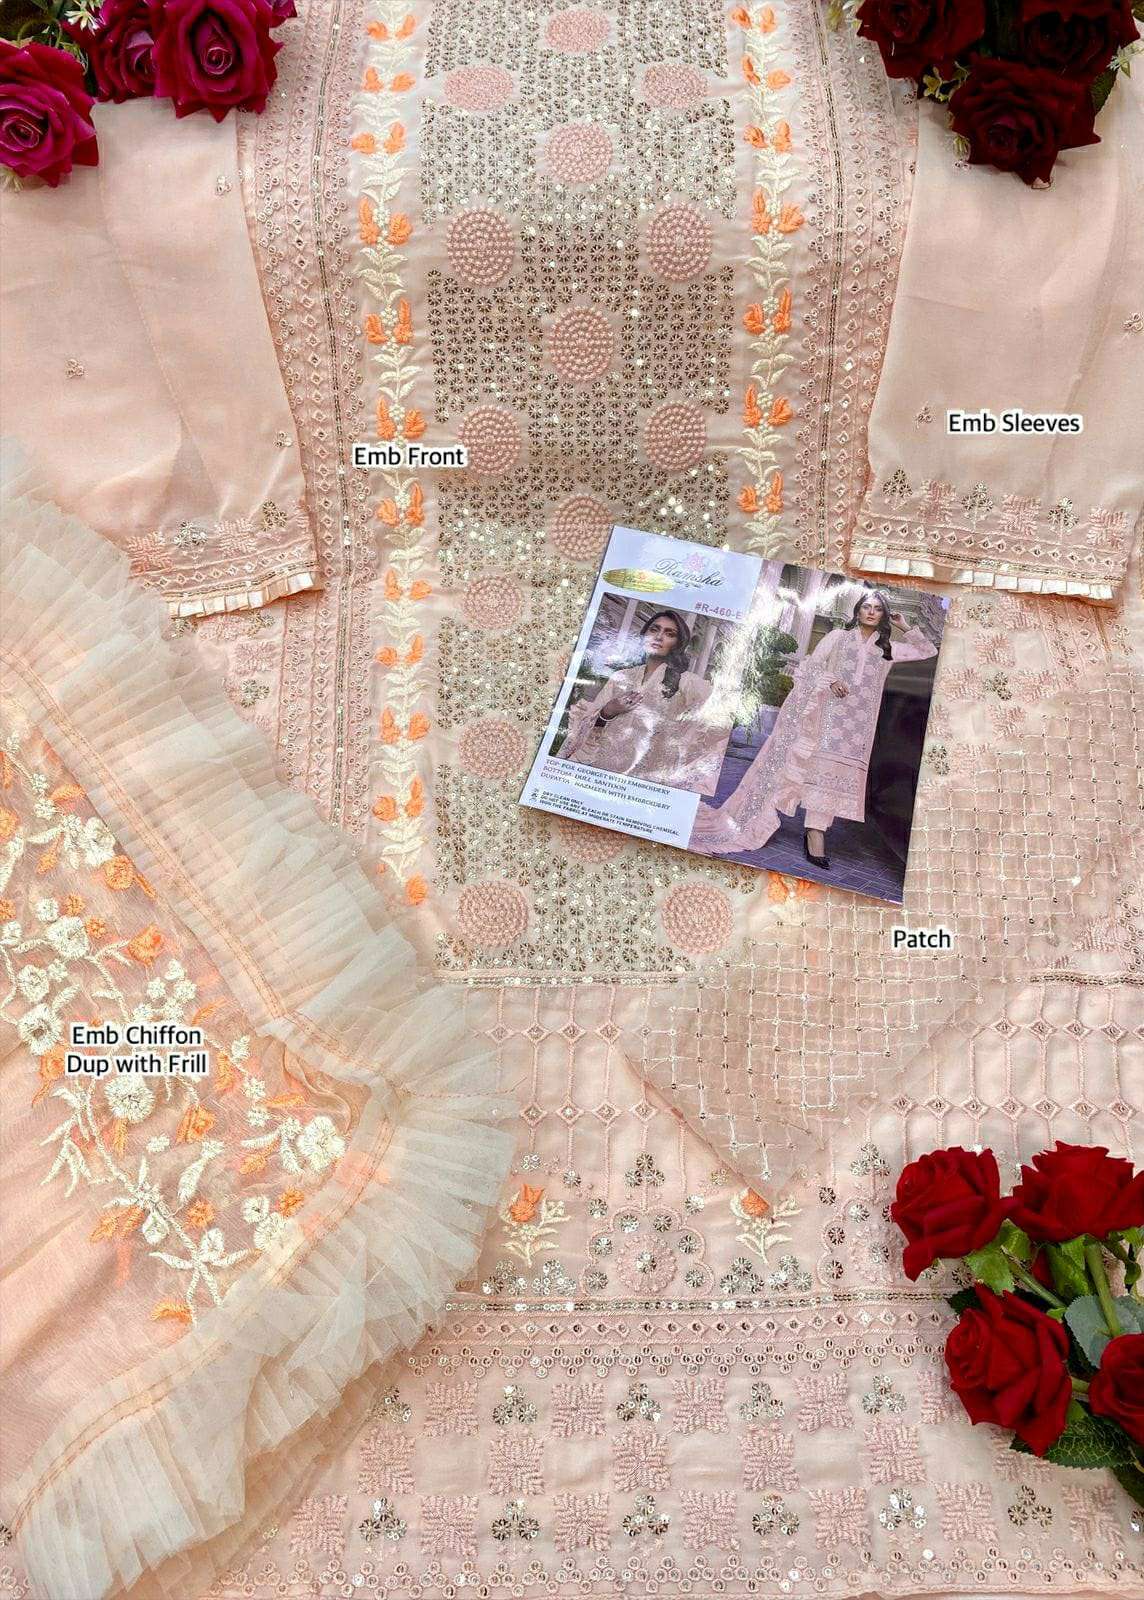 ramsha 460 nx georgette heavy embroidery salwar kameez wholesale price surat